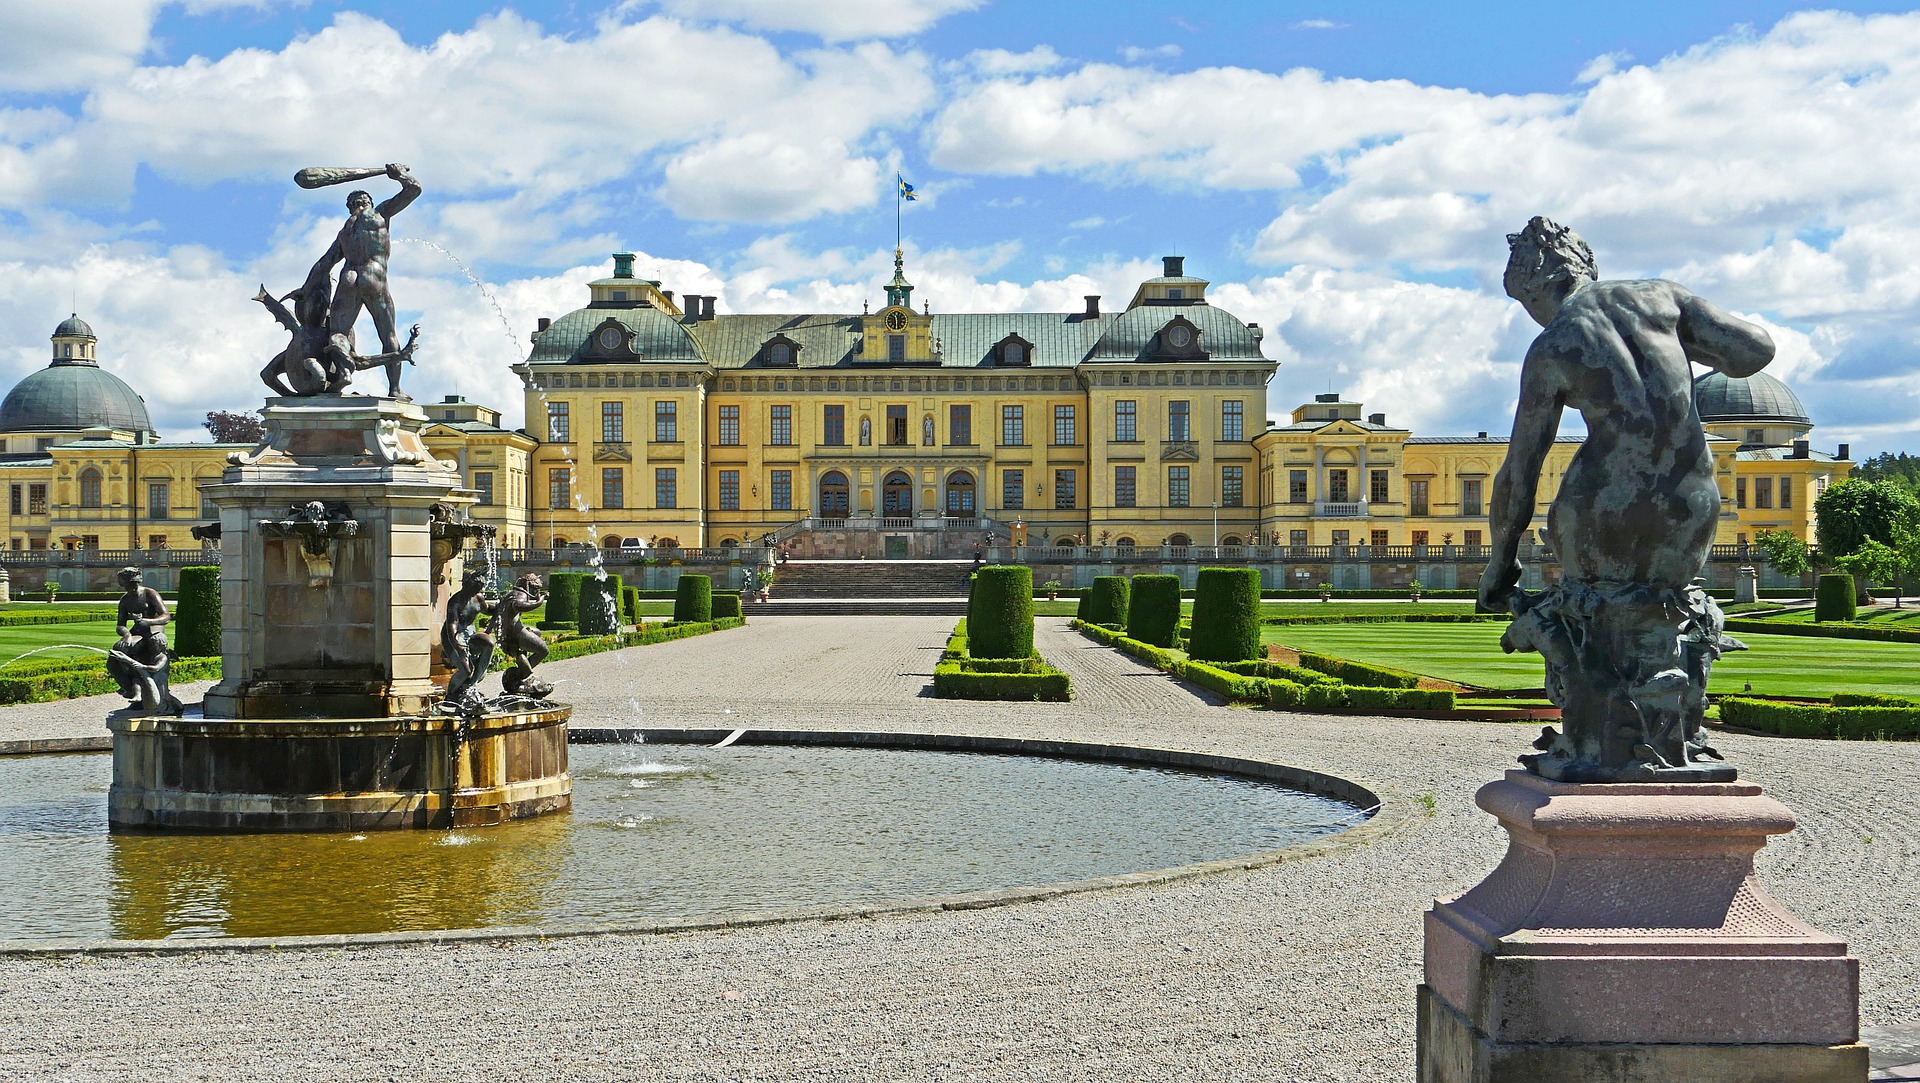 Royal residence in Sweden